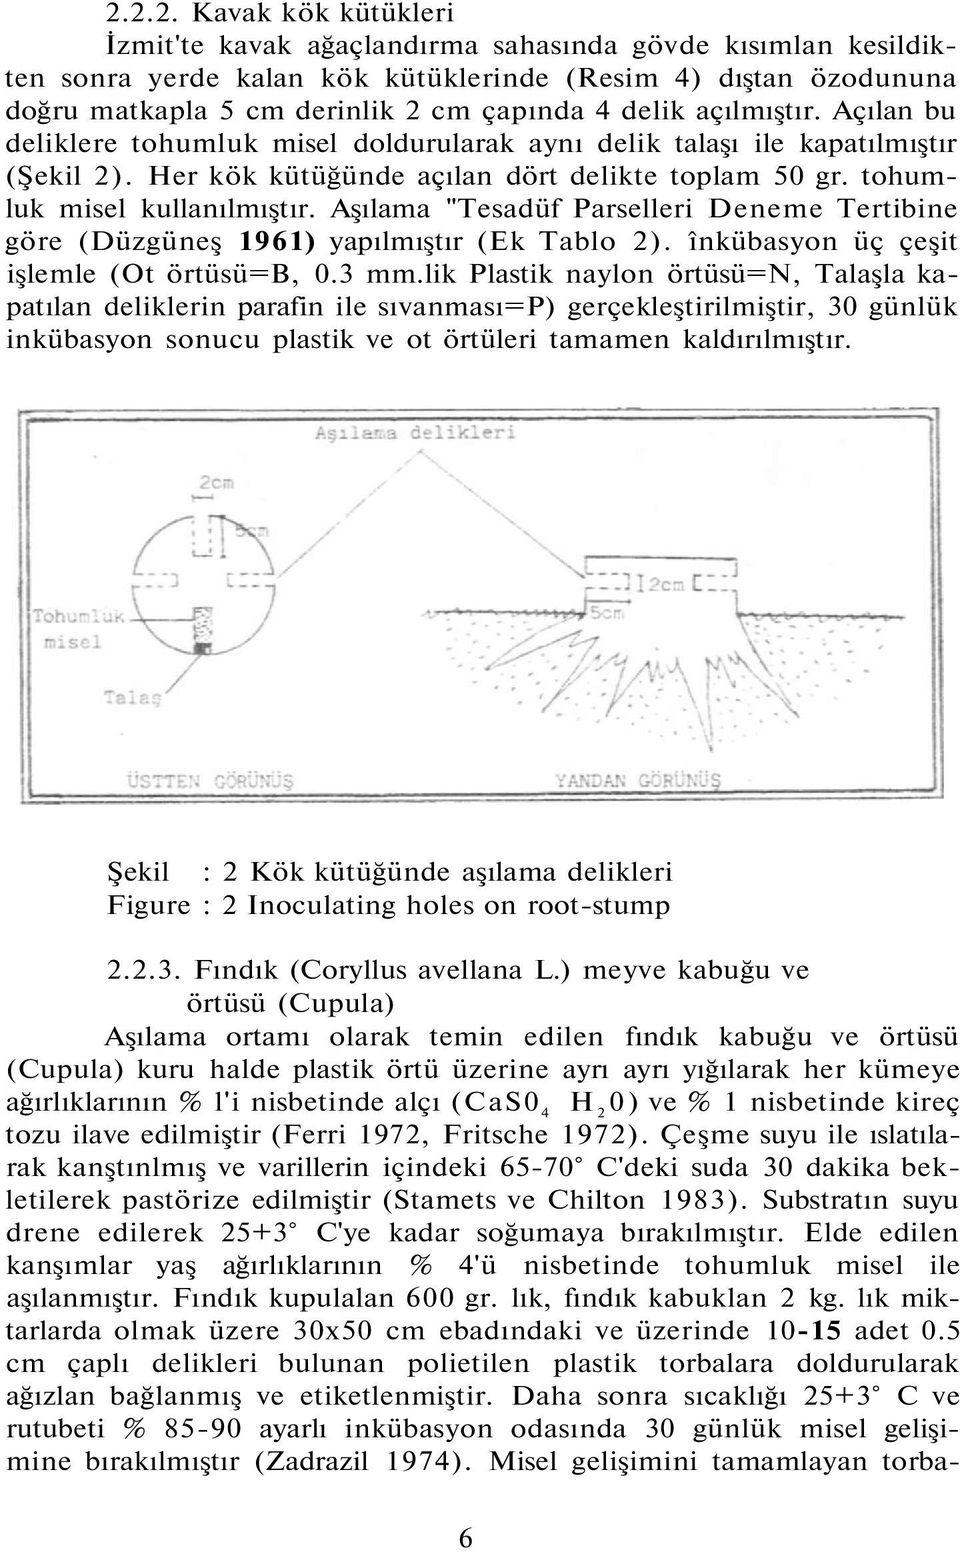 Aşılama "Tesadüf Parselleri Deneme Tertibine göre (Düzgüneş 1961) yapılmıştır (Ek Tablo 2). înkübasyon üç çeşit işlemle (Ot örtüsü=b, 0.3 mm.